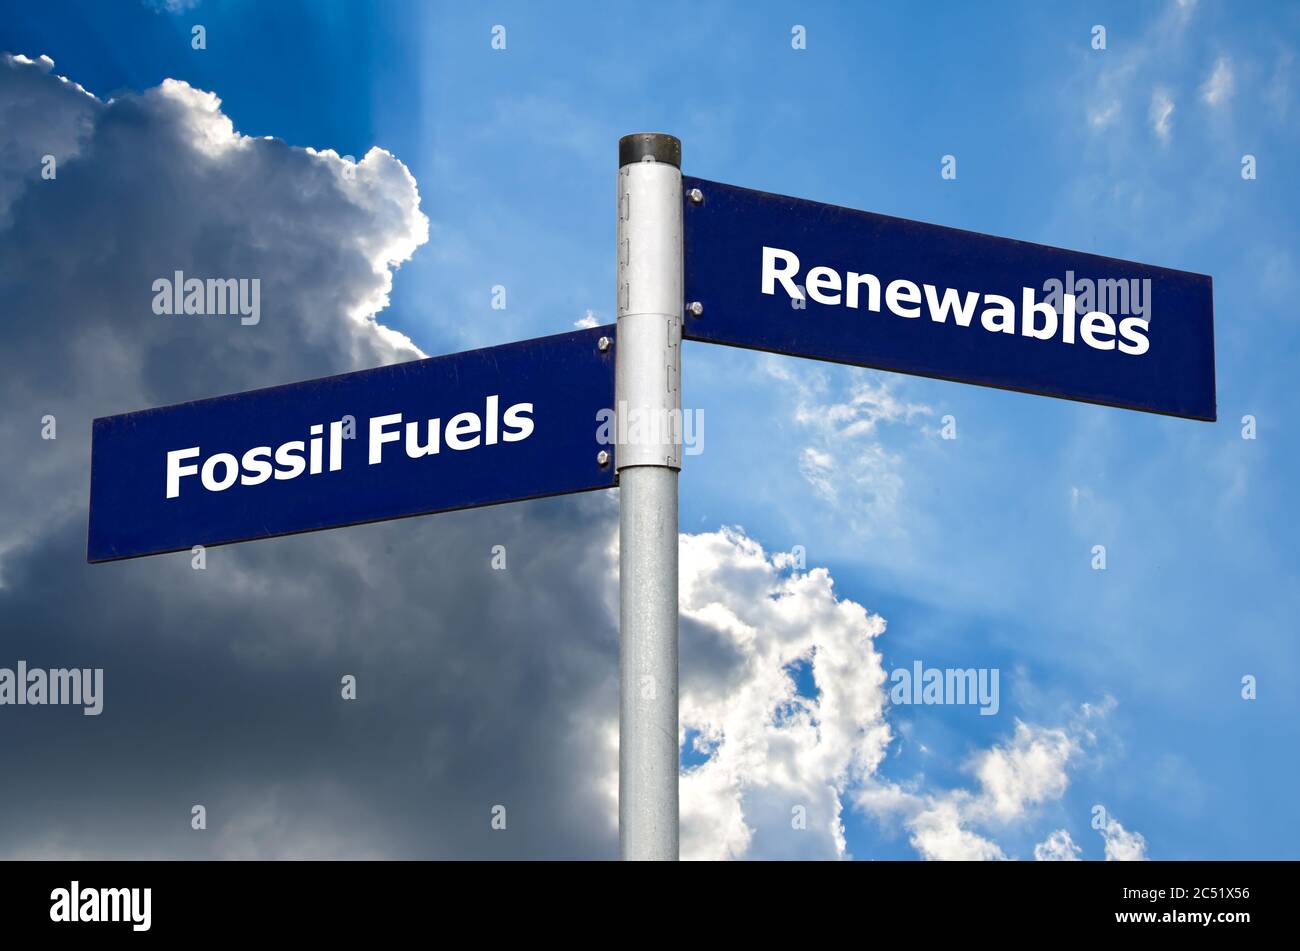 Straßenschild vor wolkenverdeckter Luft, das die Wahl zwischen ‘fossilen Brennstoffen’ und ‘renewables’ darstellt Stockfoto